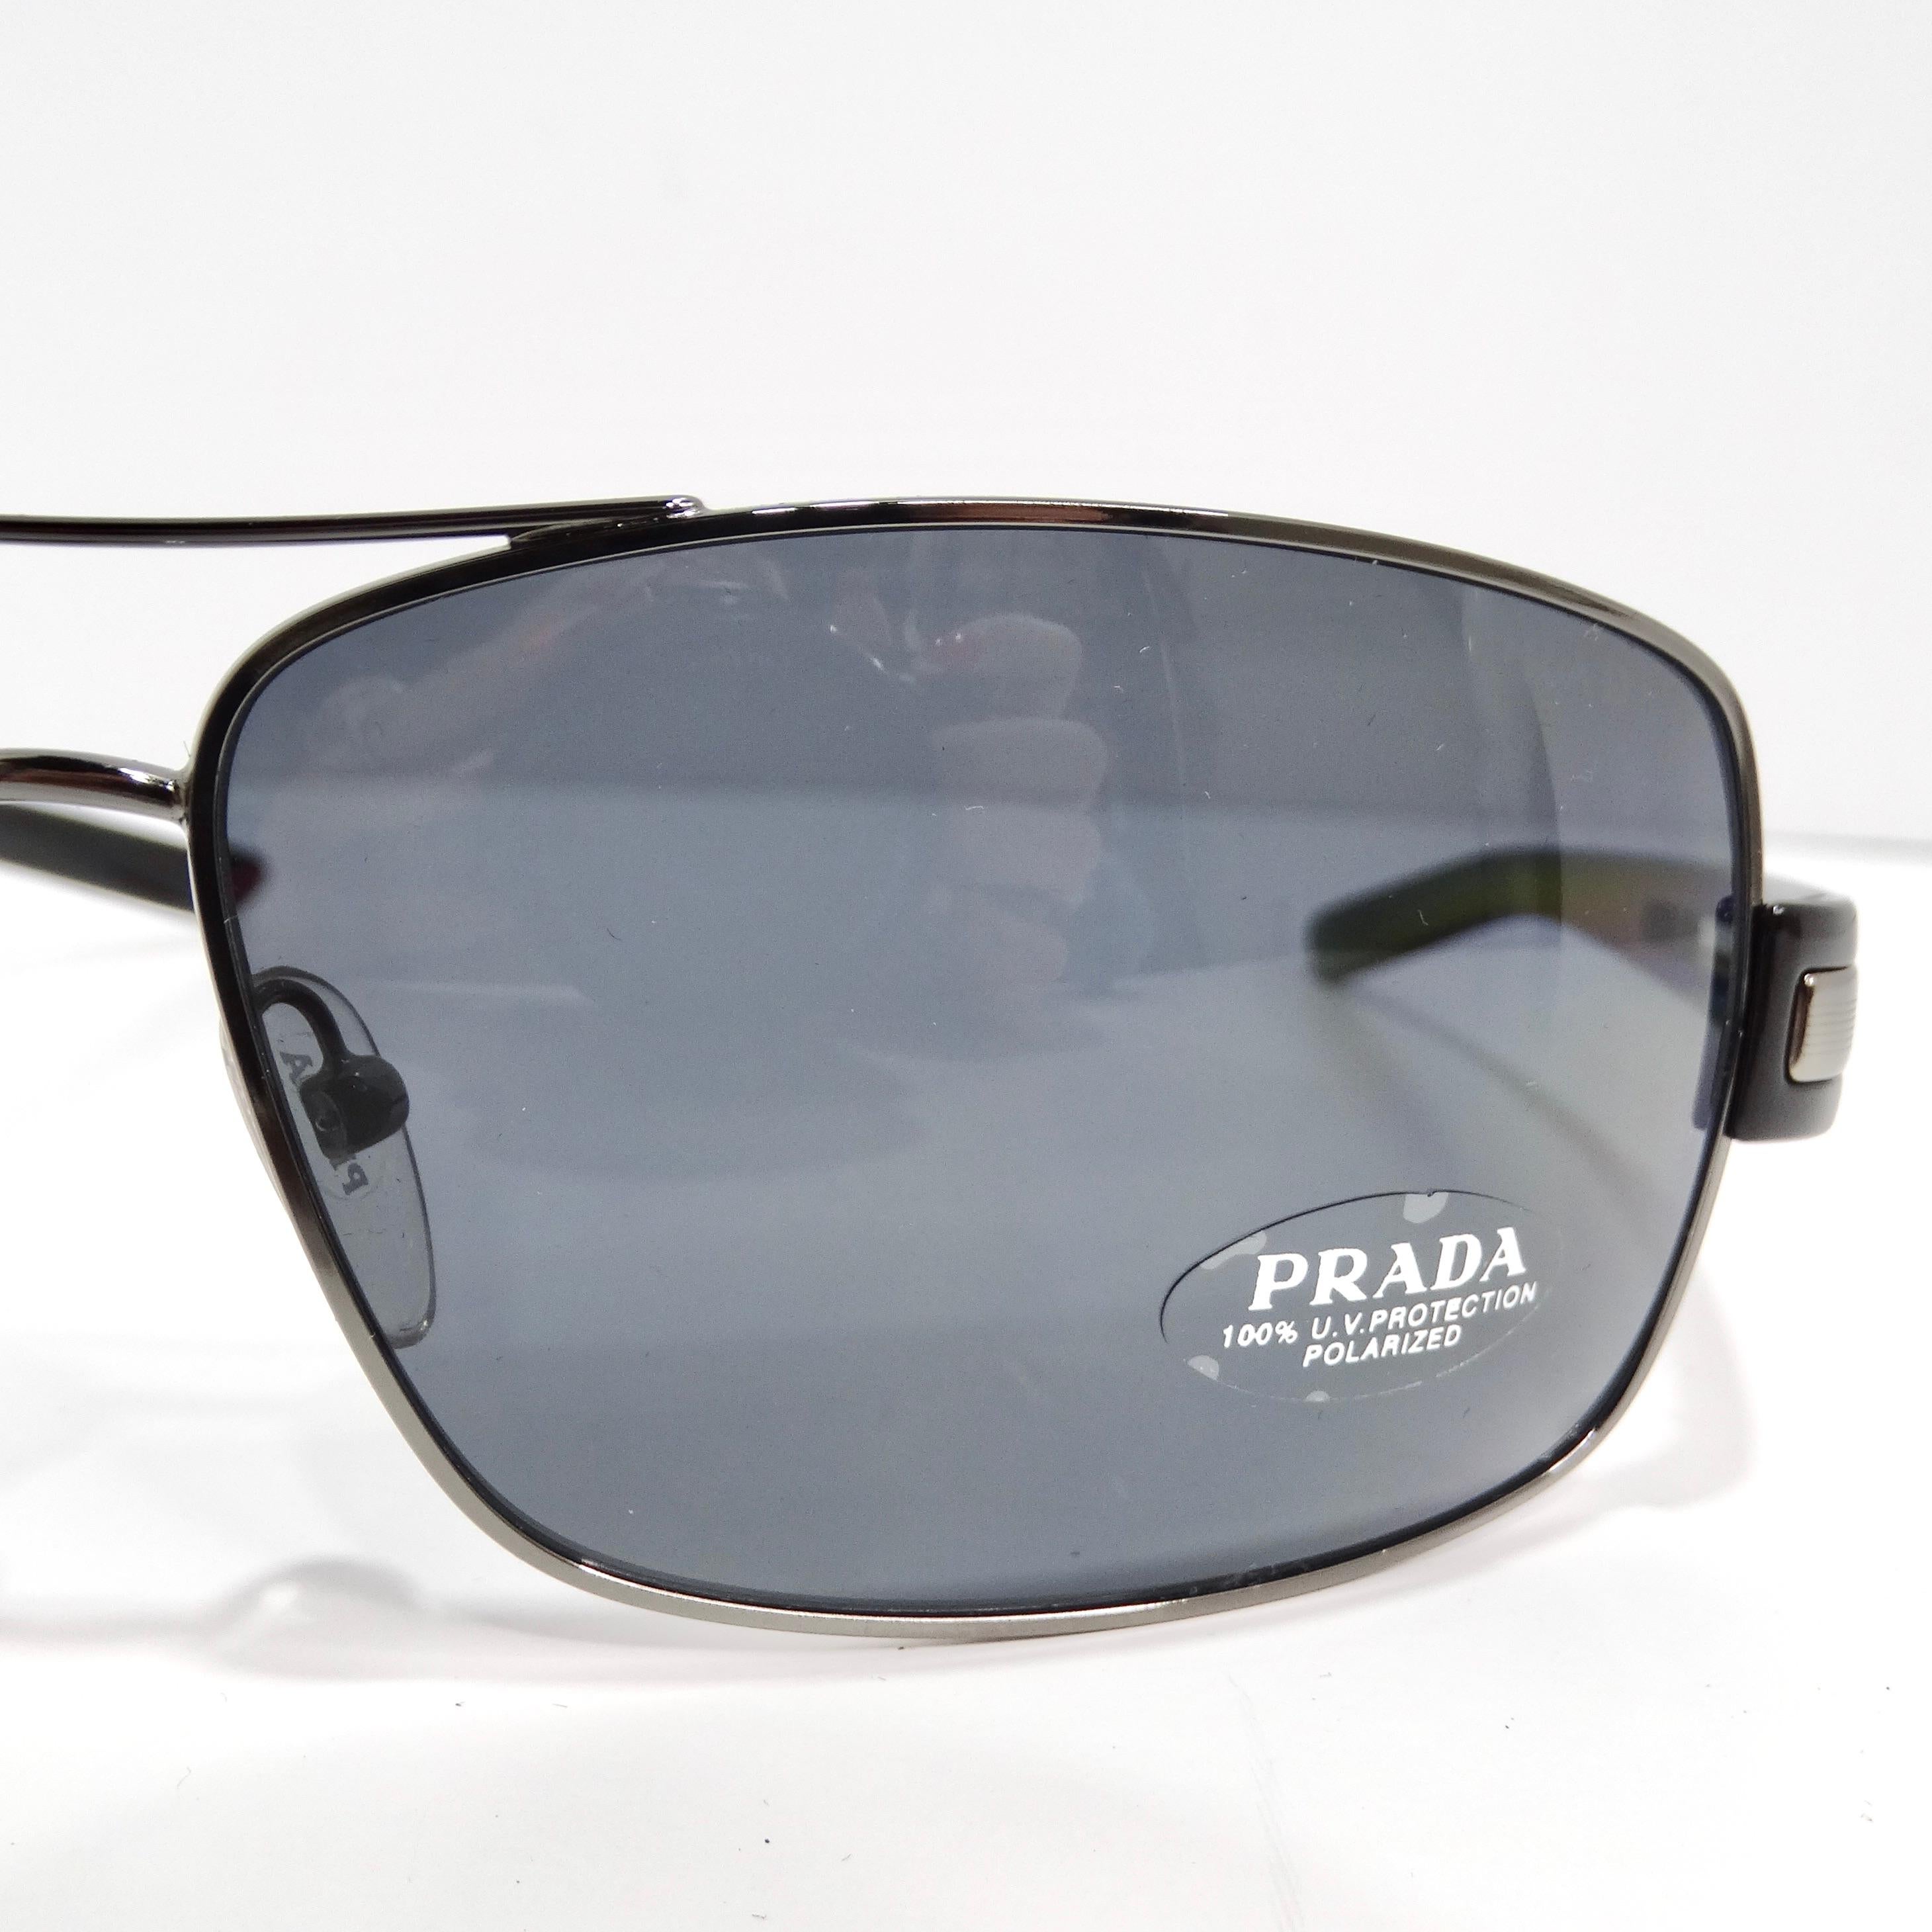 Entrez dans la sophistication intemporelle avec les lunettes de soleil Aviator Prada 1990, noires et argentées, un style aviateur classique qui combine sans effort l'élégance et le style durable. Ces lunettes de soleil présentent de fins bords